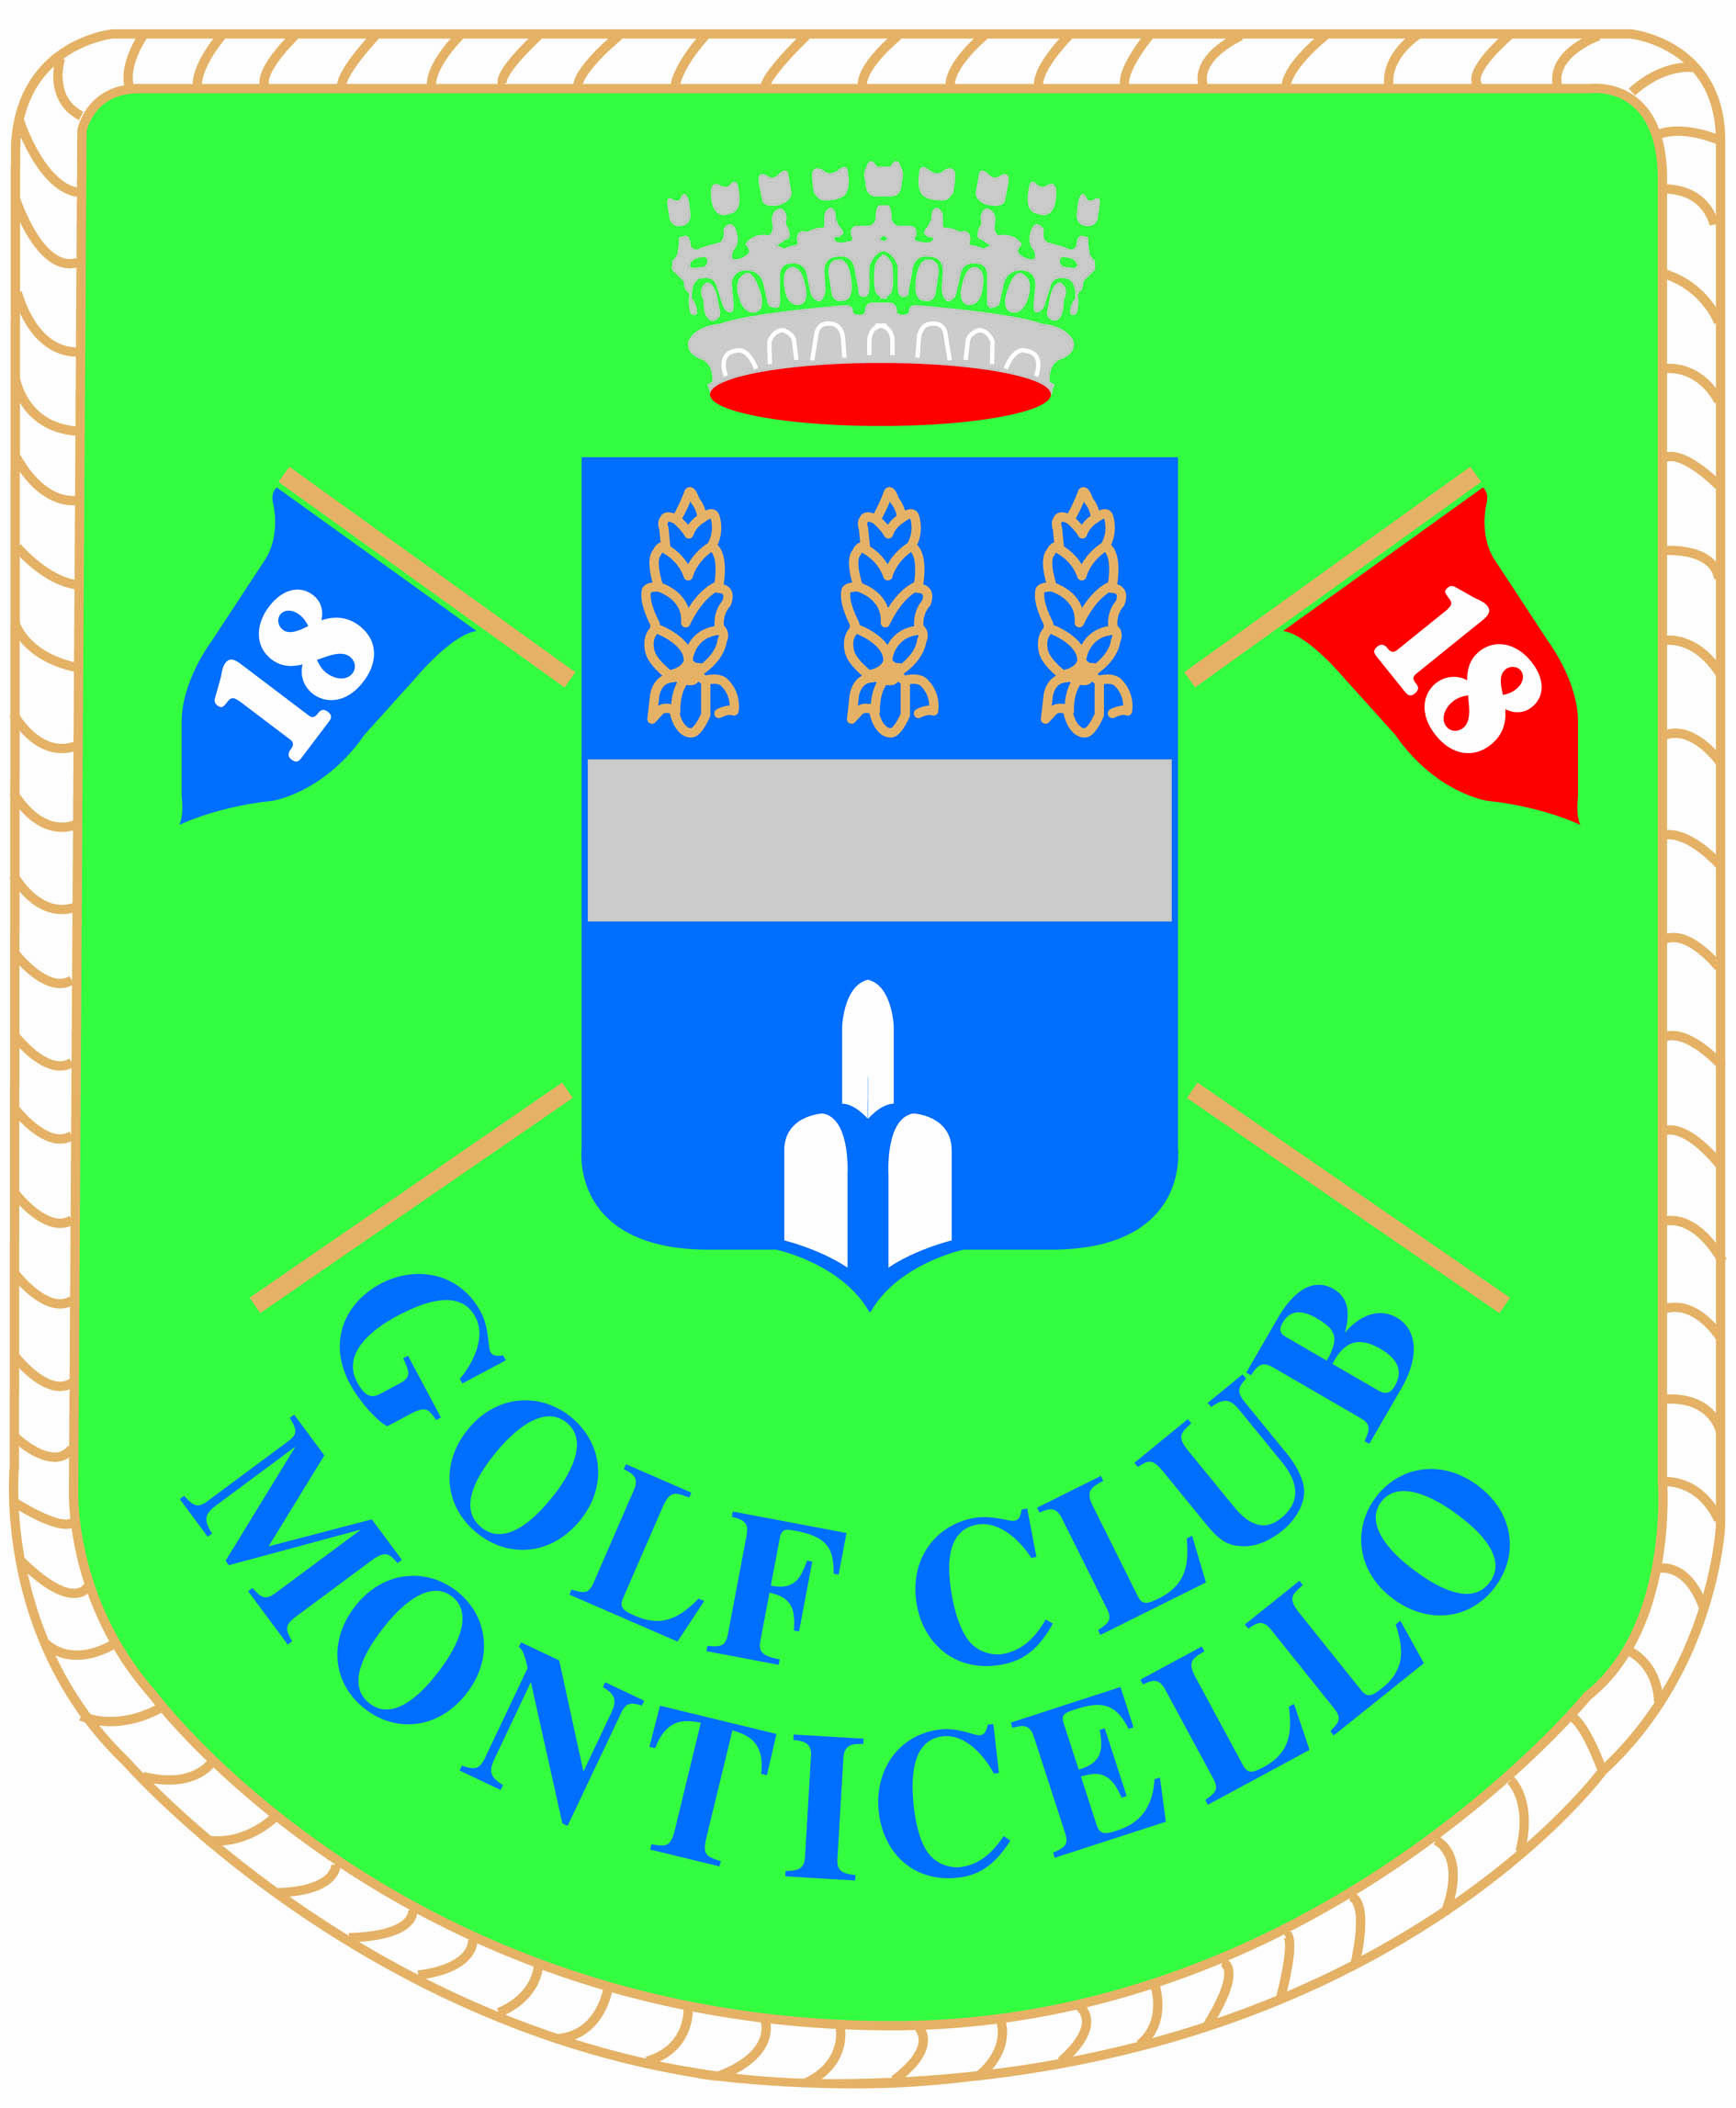 Golf Club Monticello